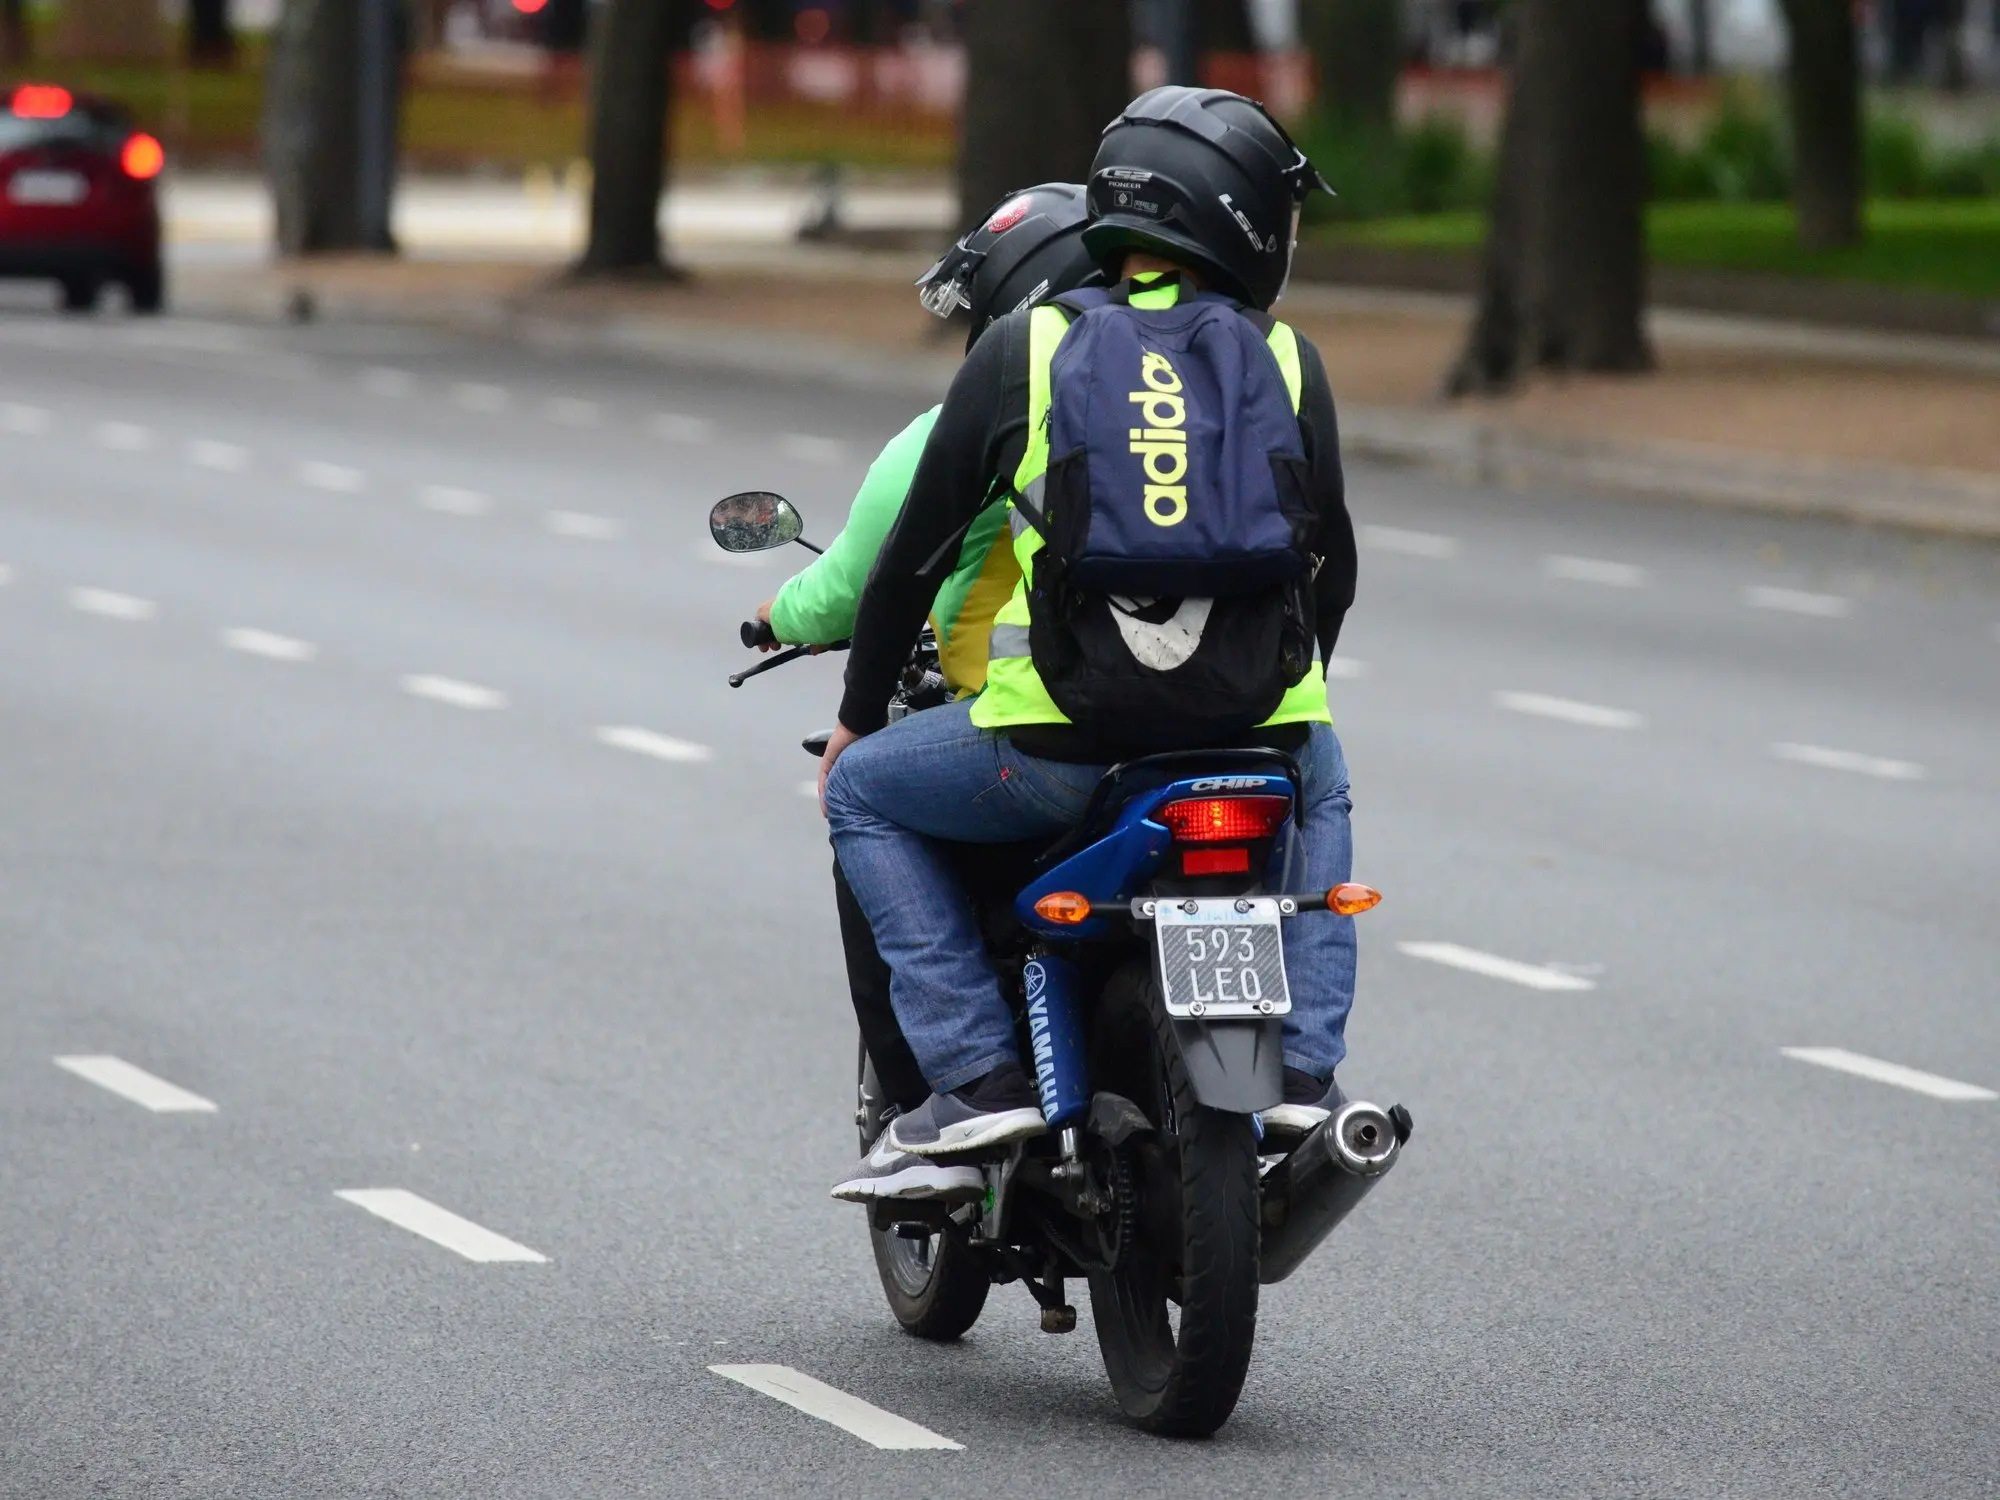 patentamiento de motos online - Qué significa que te vendan la moto